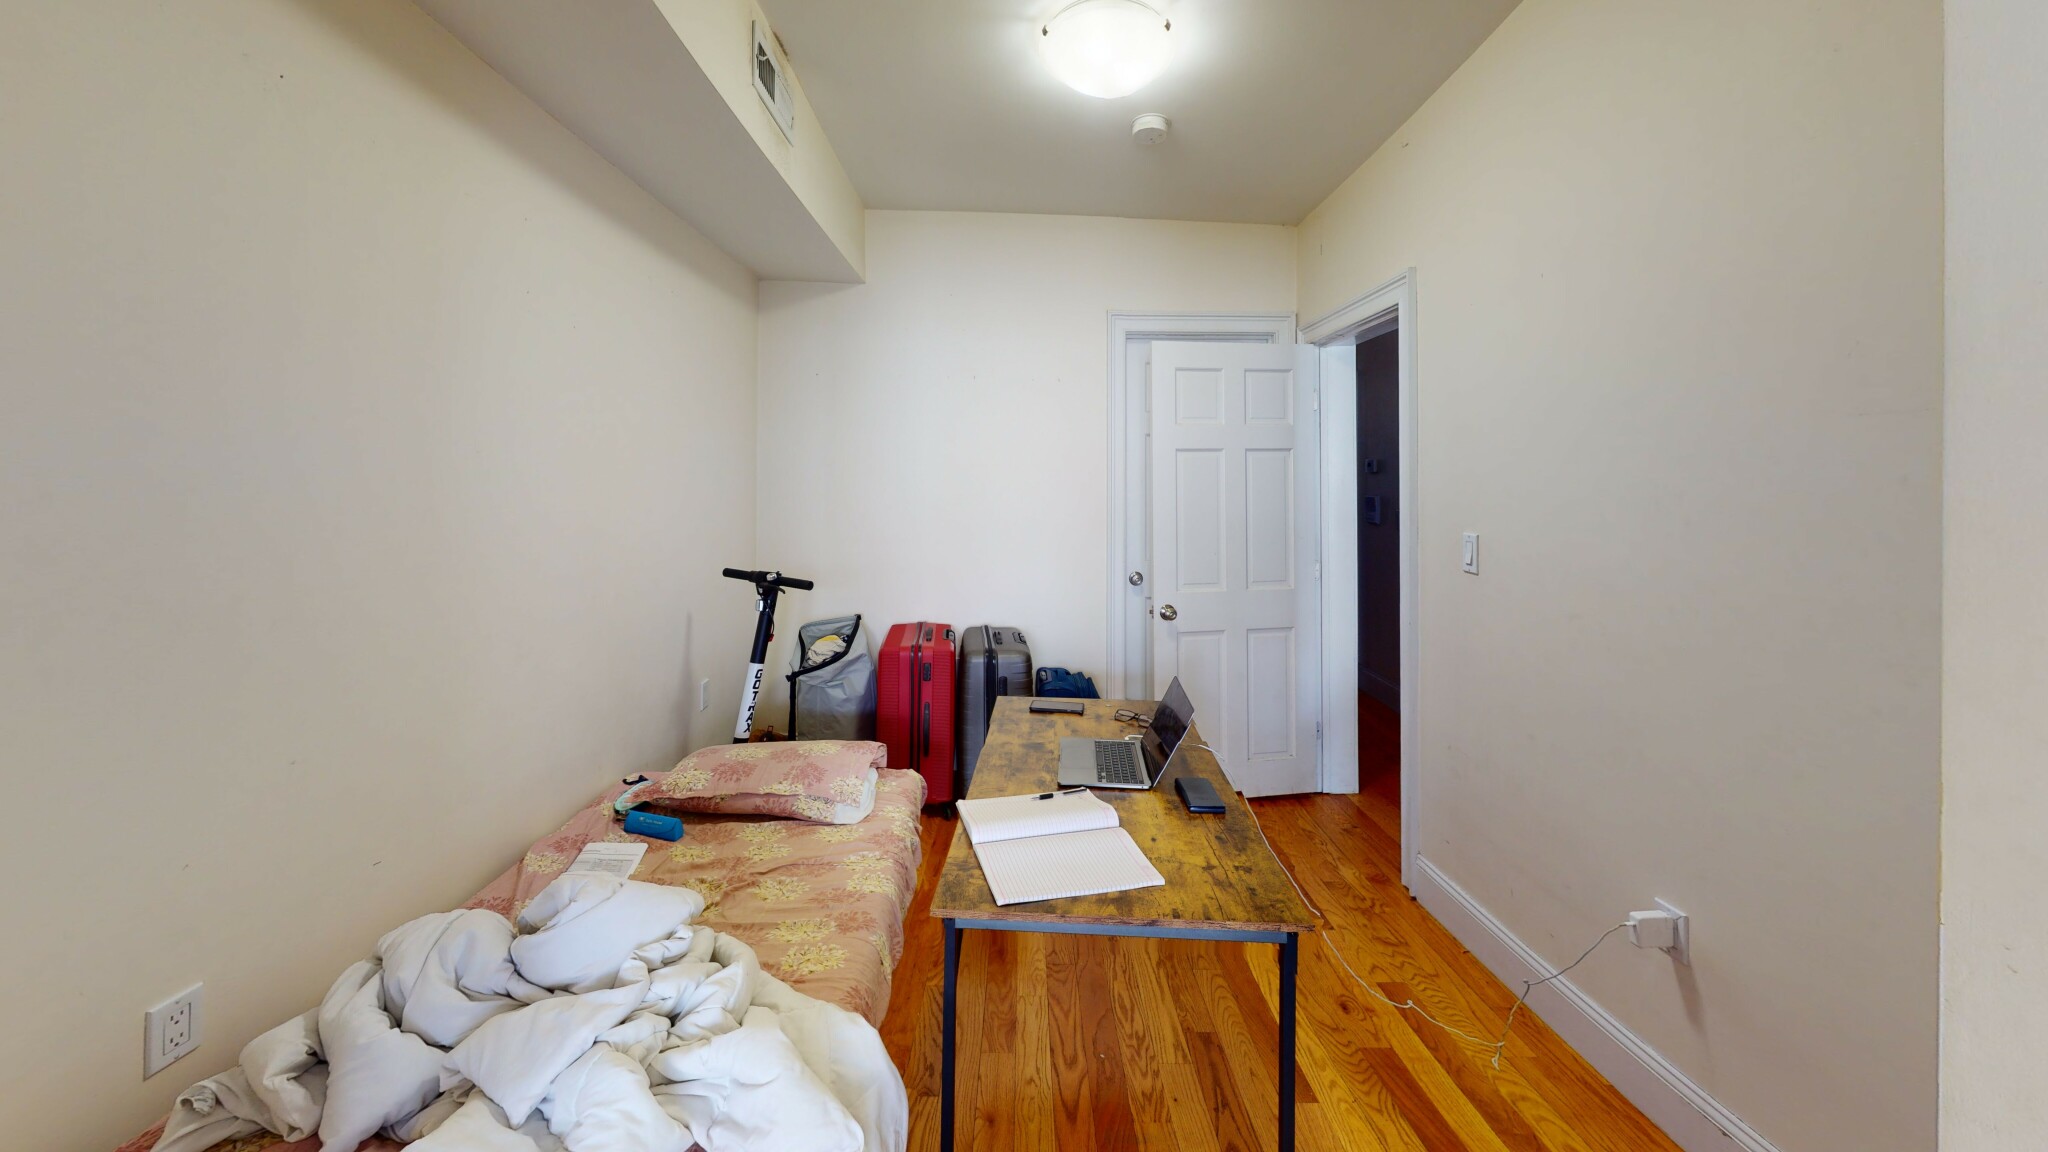 Photos of apartment on Chesterton St.,Boston MA 02119